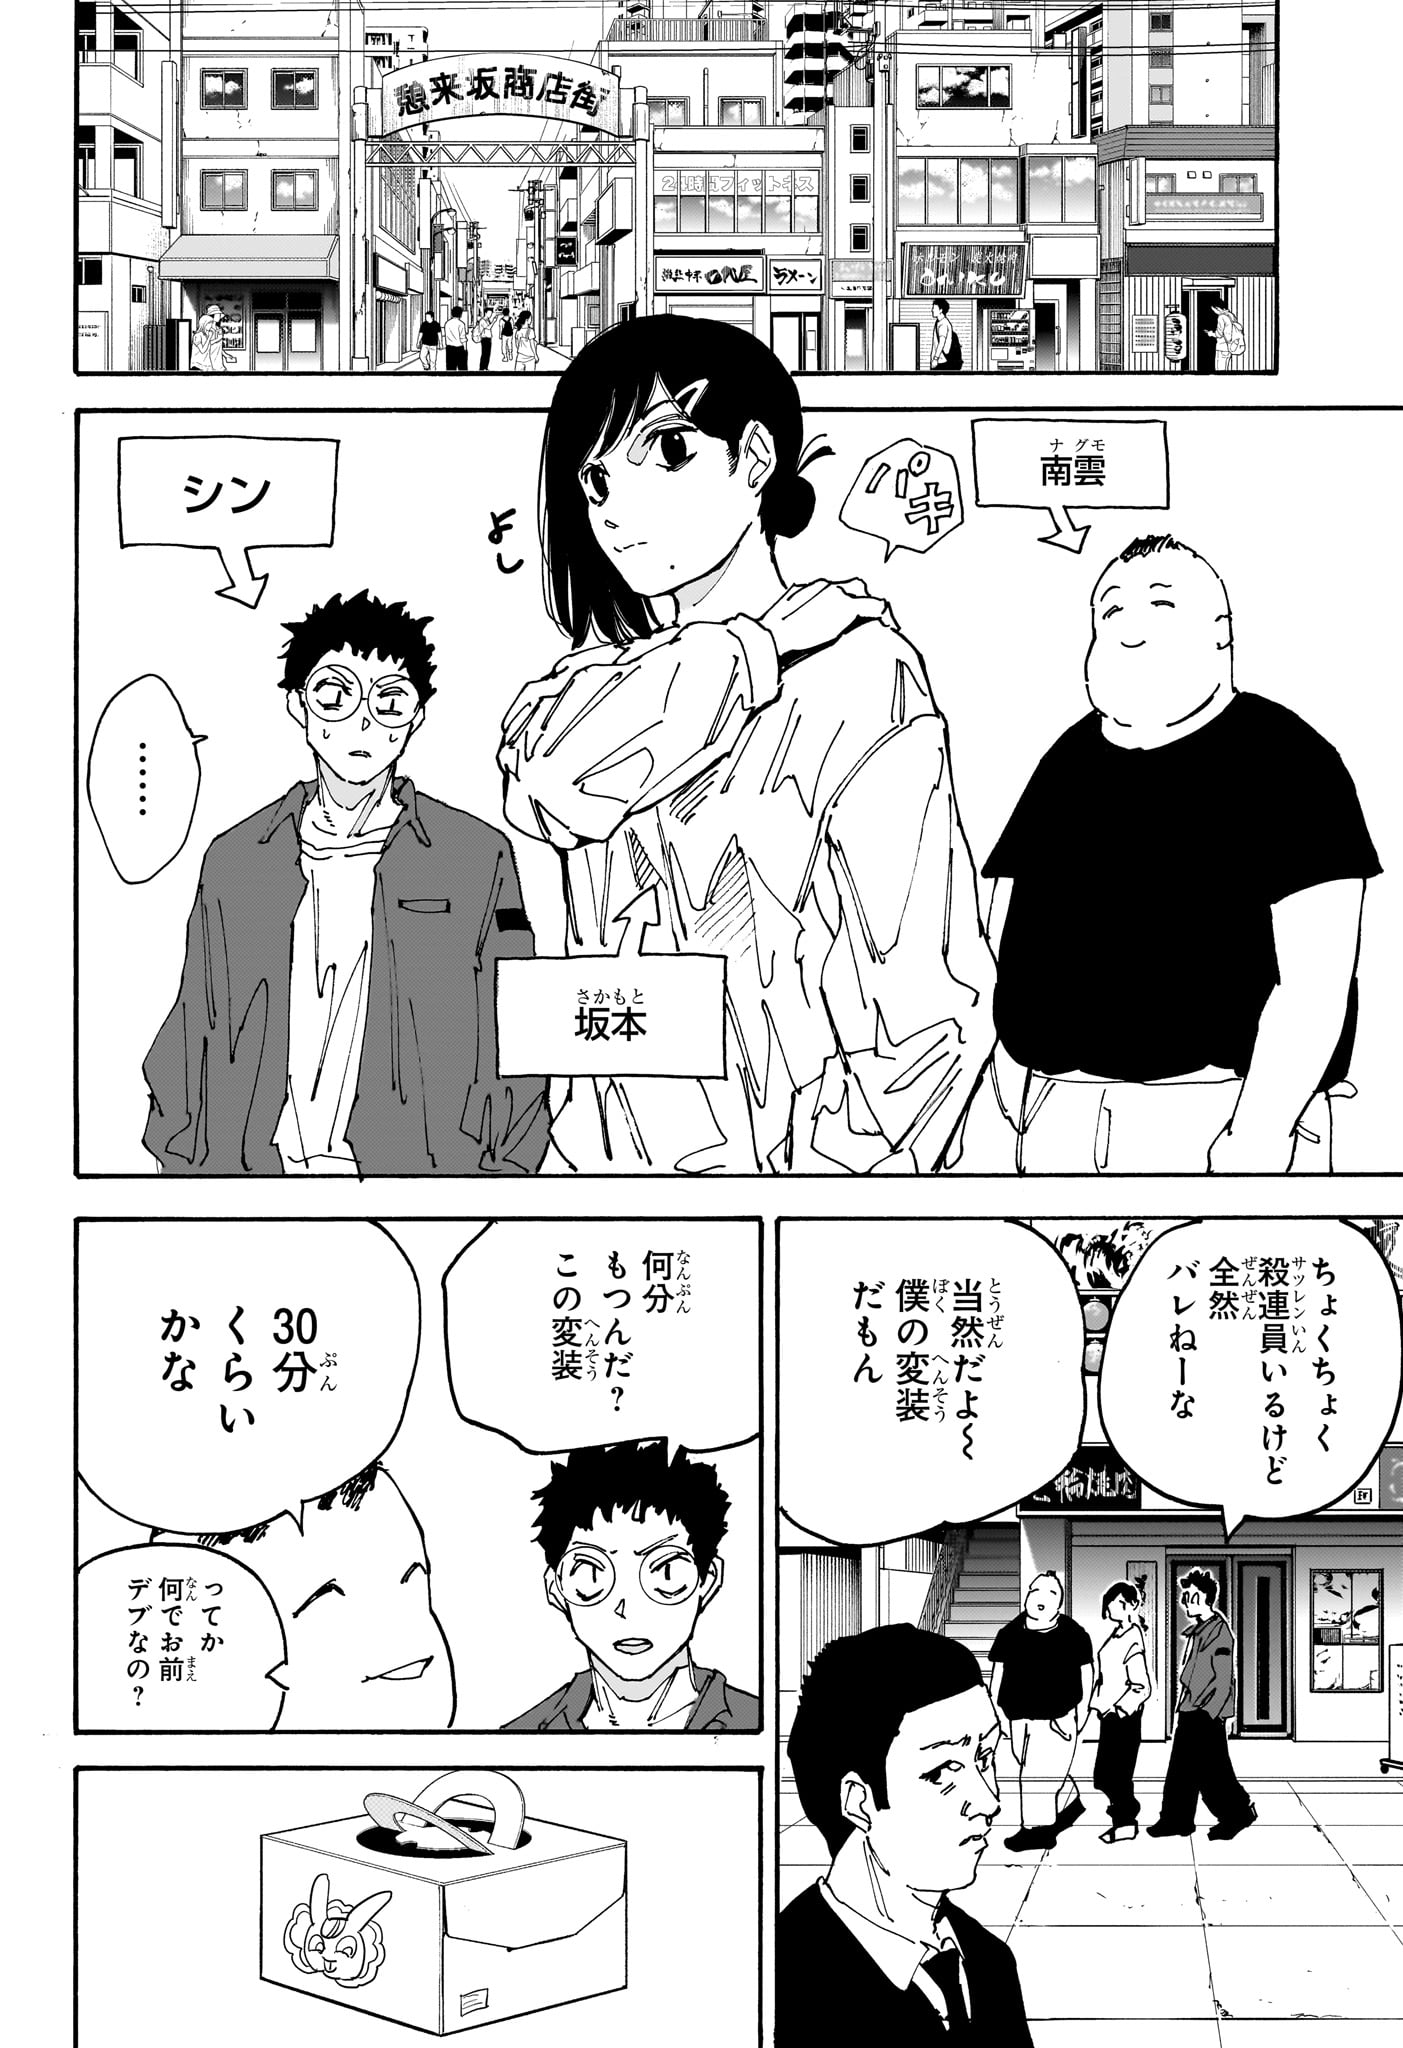 Sakamoto Days - Chapter 169 - Page 16